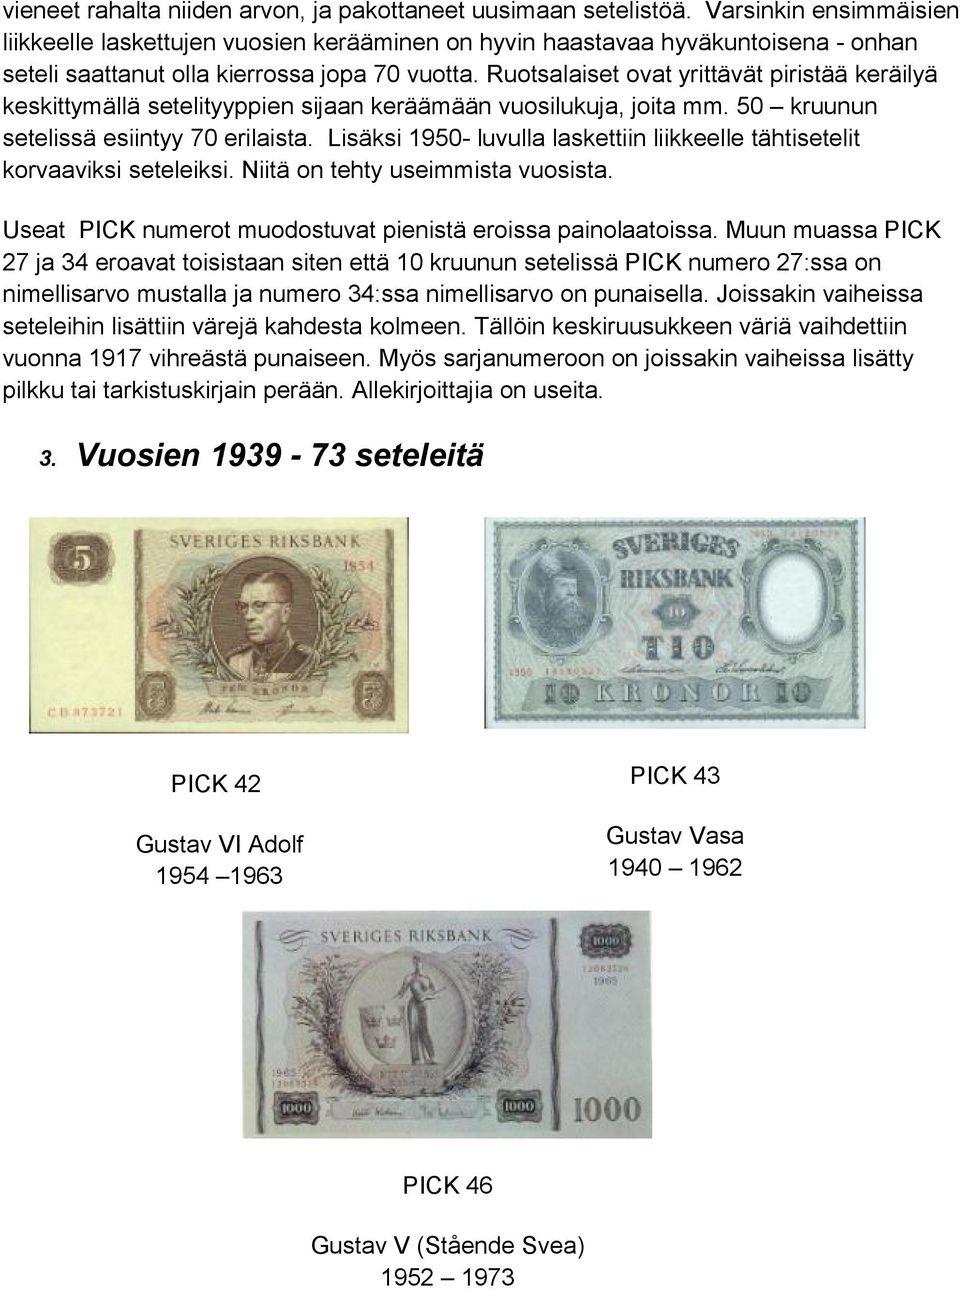 Ruotsalaiset ovat yrittävät piristää keräilyä keskittymällä setelityyppien sijaan keräämään vuosilukuja, joita mm. 50 kruunun setelissä esiintyy 70 erilaista.